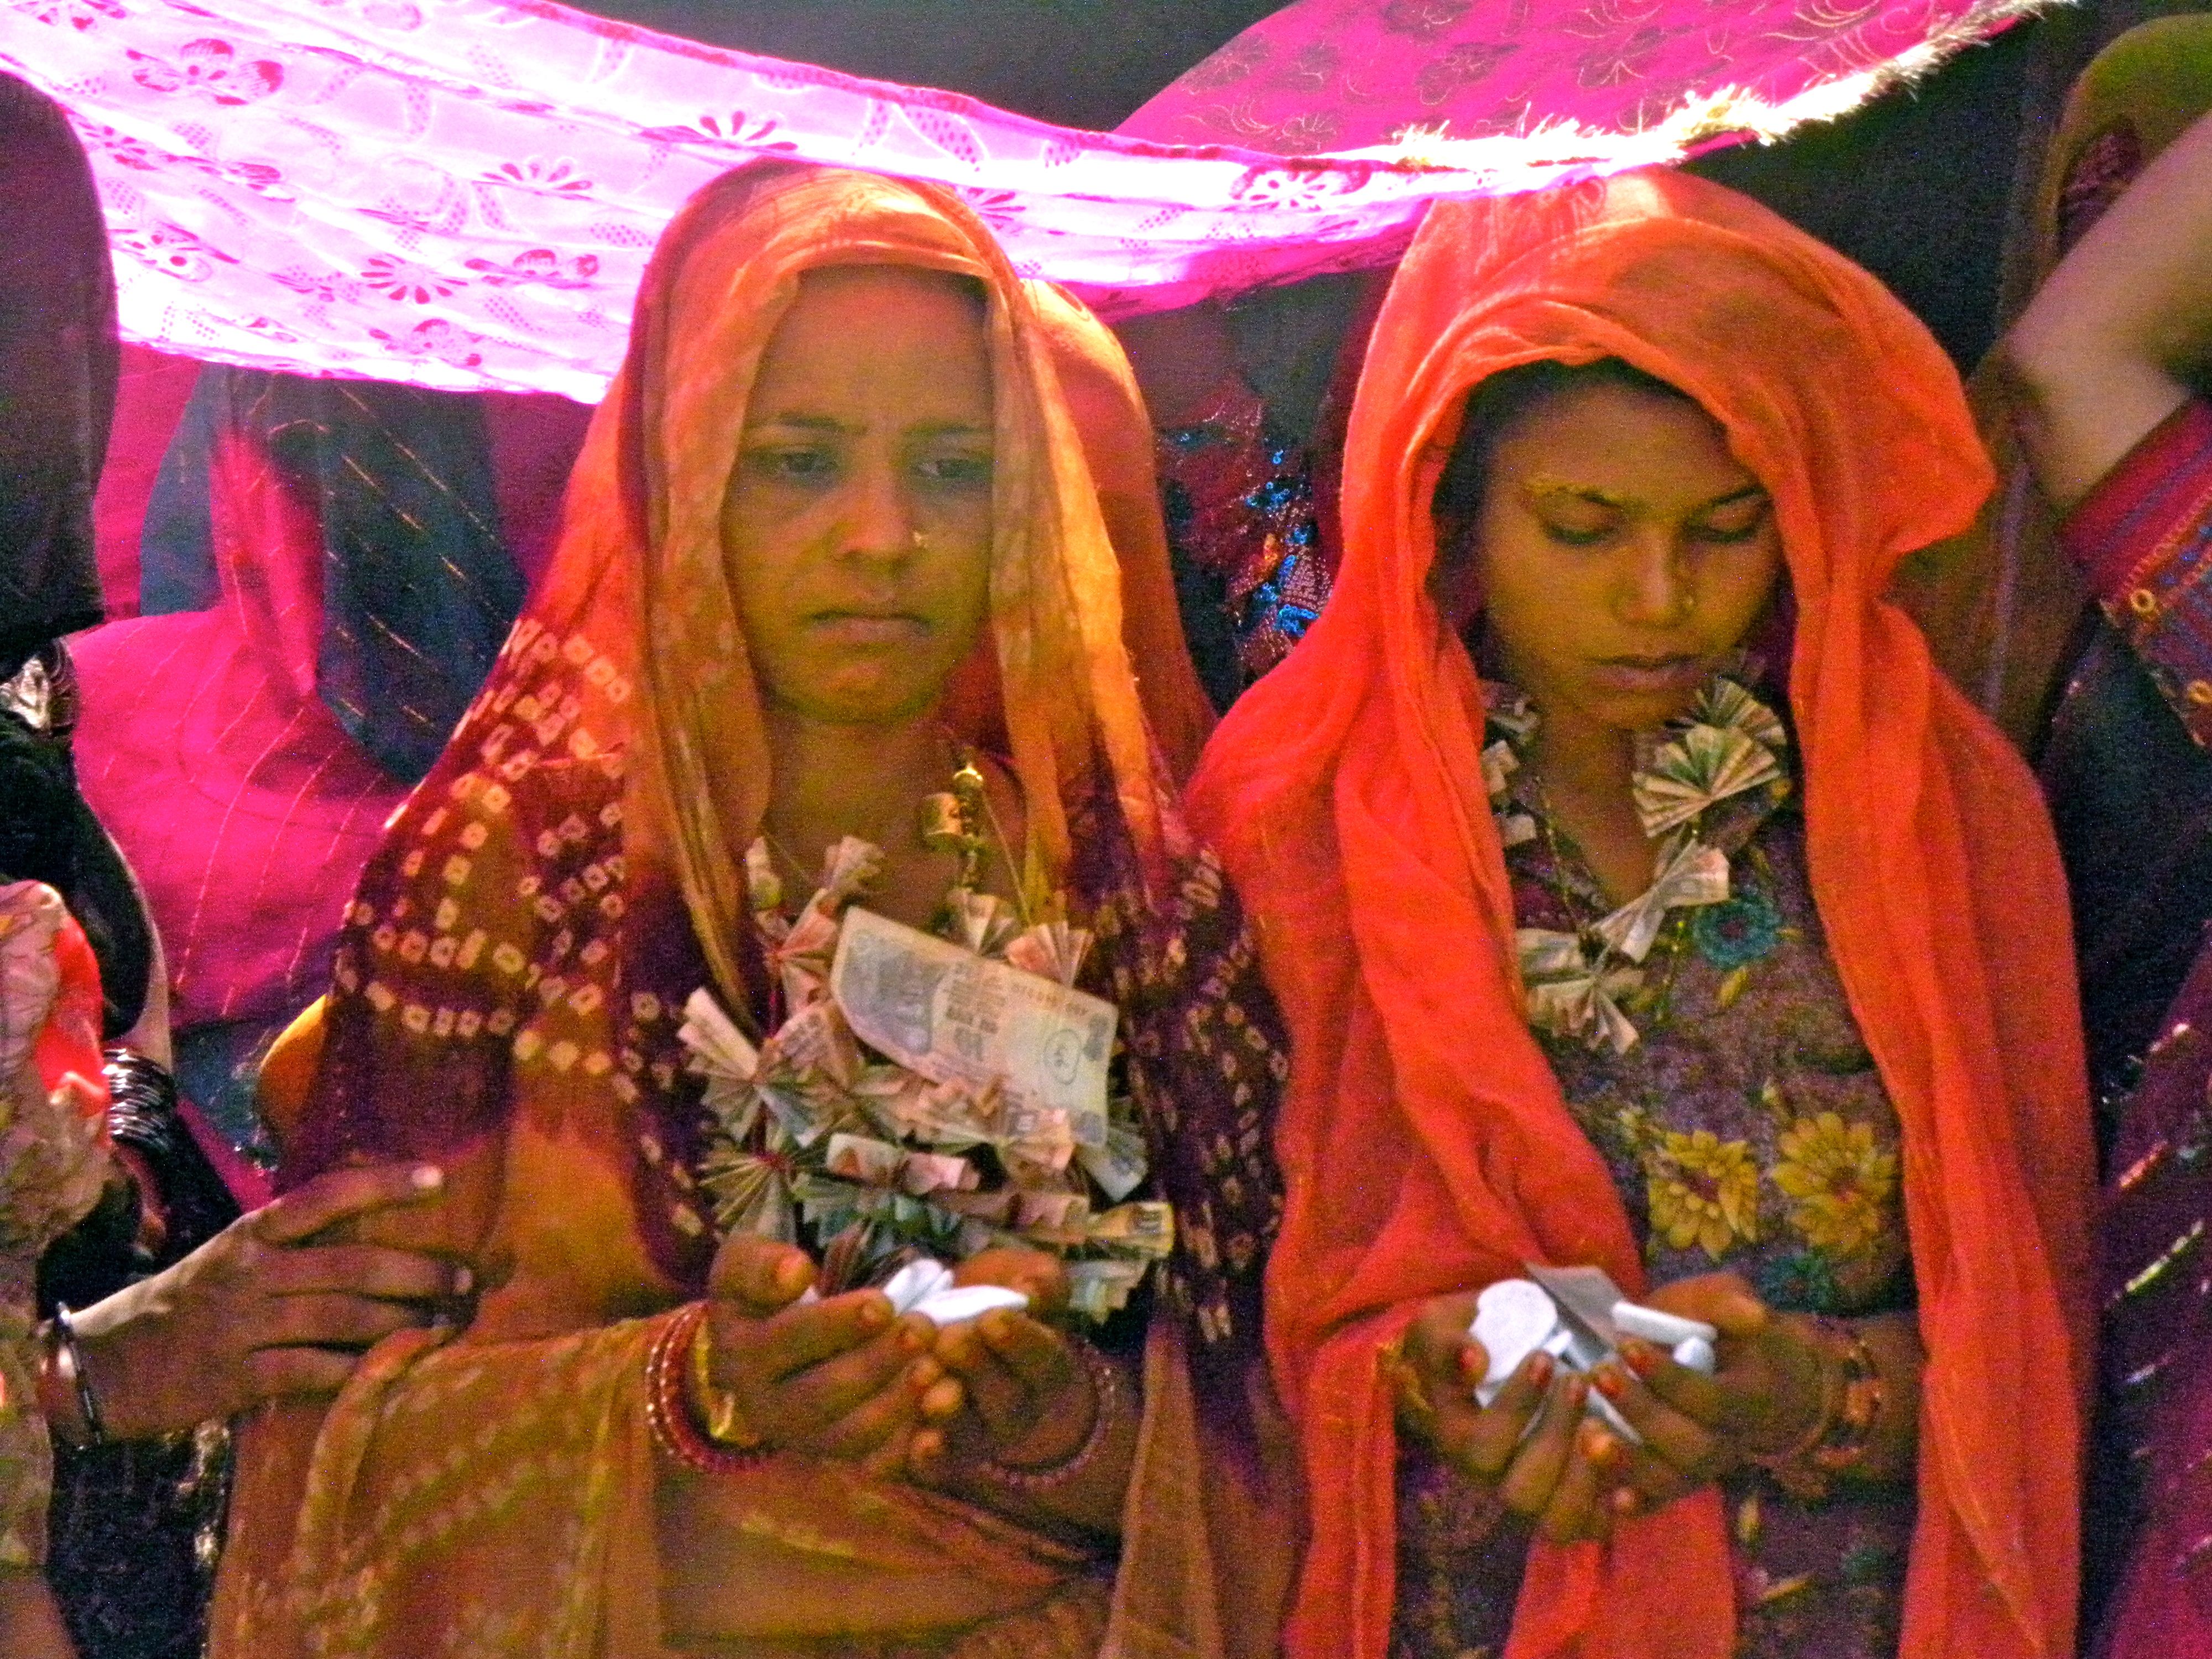  Prostitutes in Gujrat, Pakistan